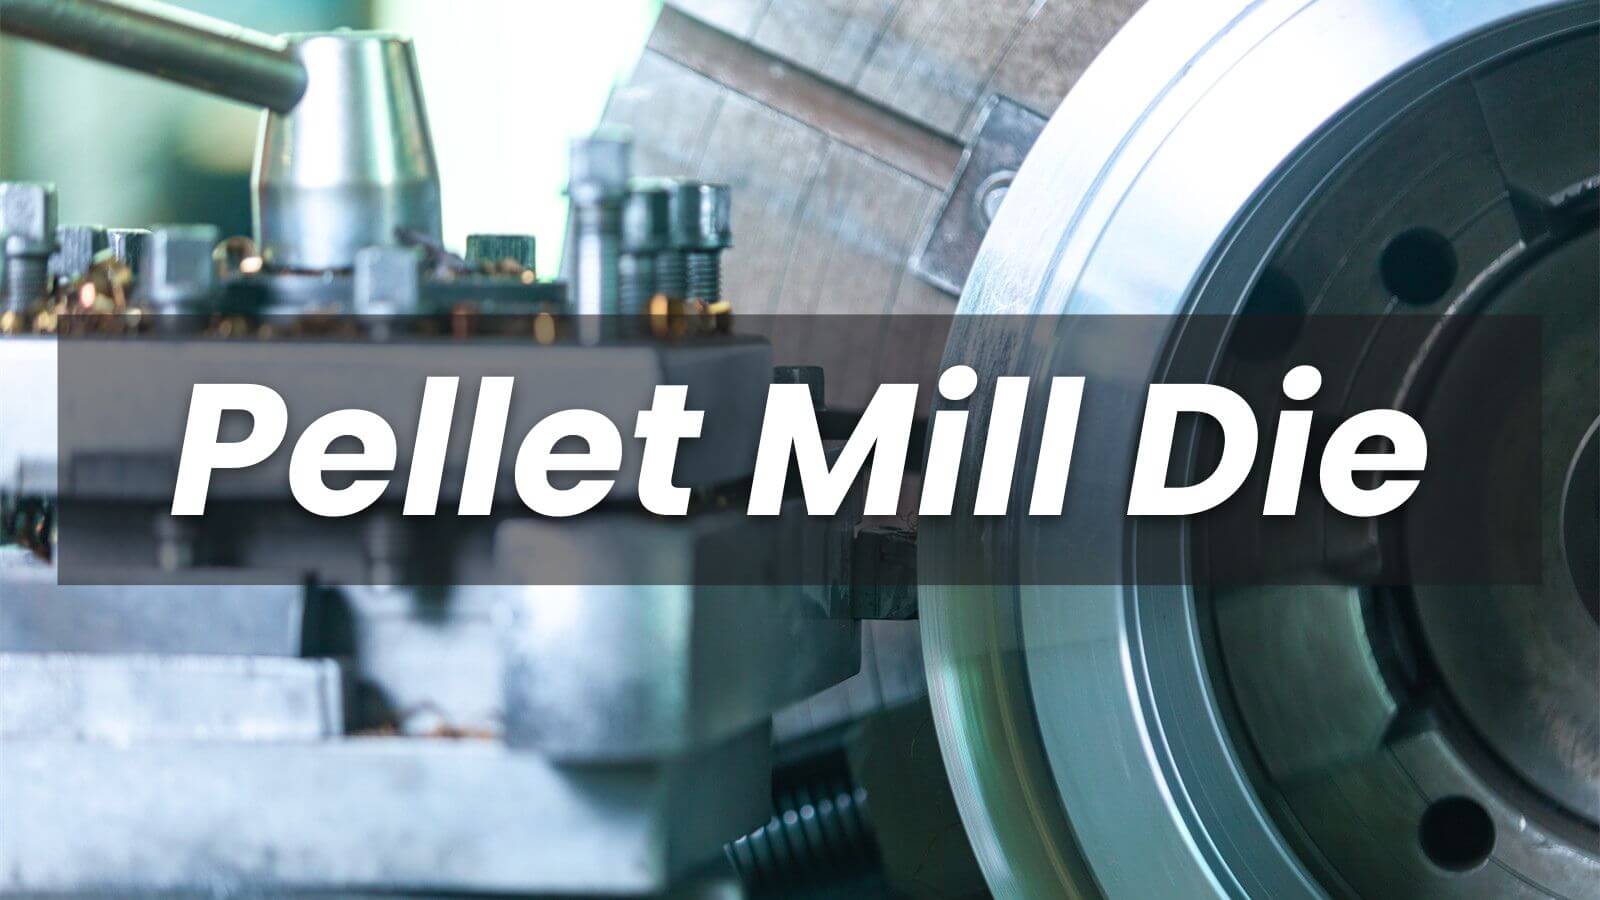 Pellet Mill Die in Nepal